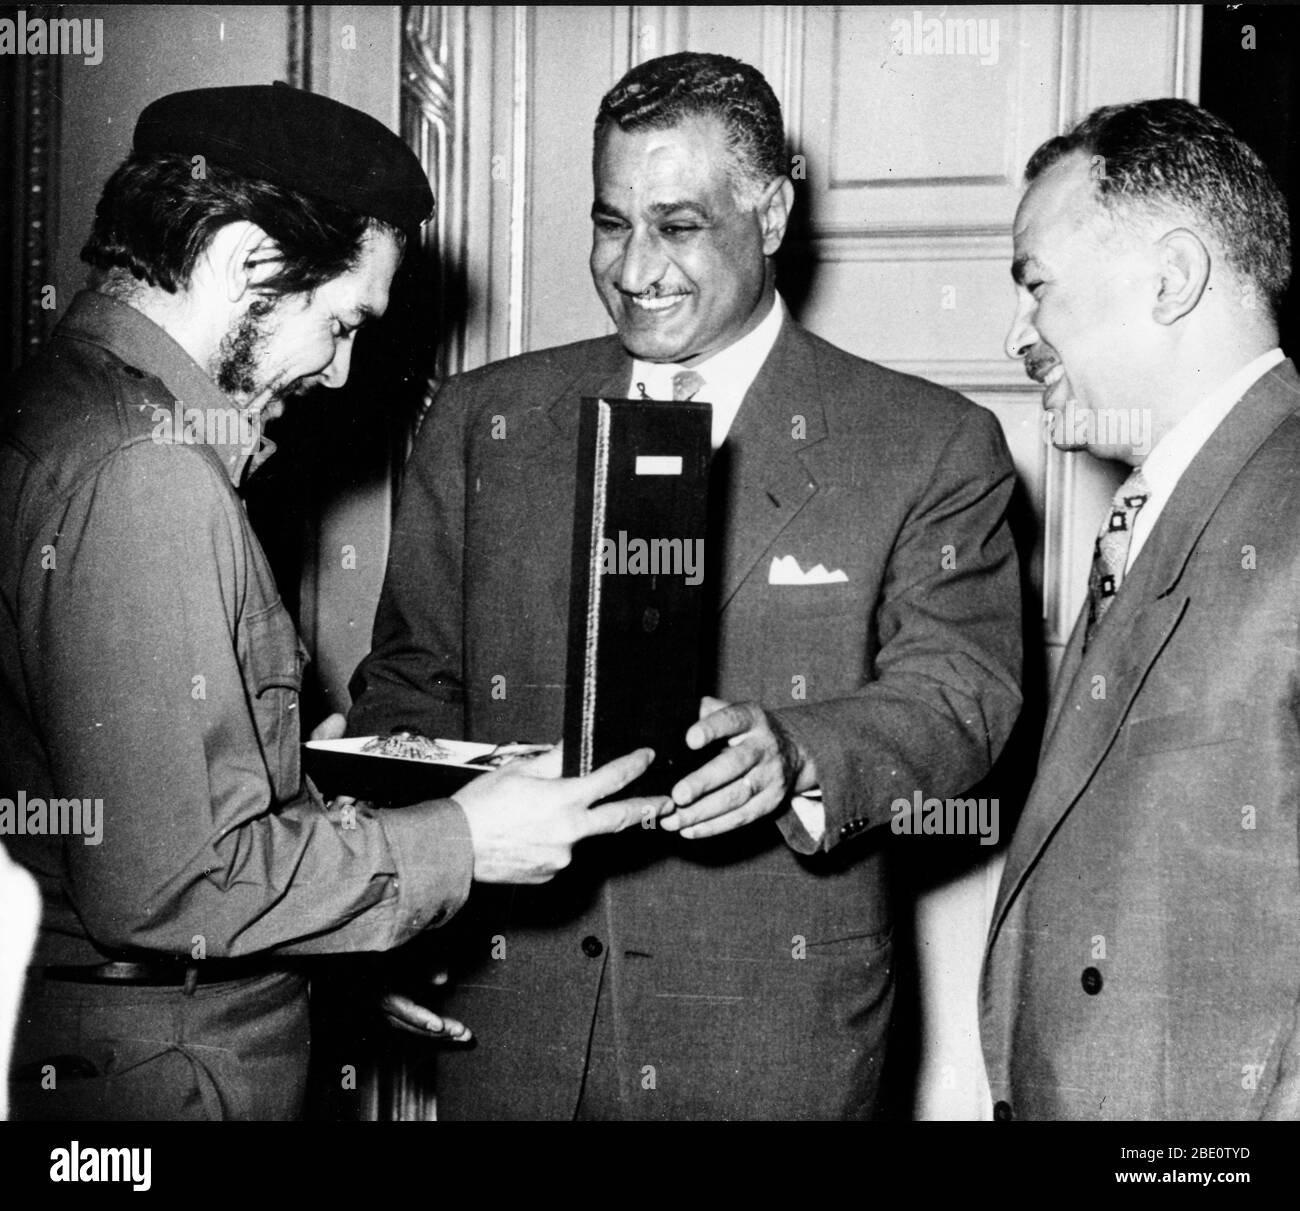 22 juin 1959 - le Caire, Egypte - le président égyptien GAMAL ABDEL NASSER (au centre), décerne le Commandant ERNESTO 'CHE' GUEVARA à l'ordre d'Al Goumbania avec un autre homme regardant. Guevara, qui a reçu son premier poste officiel à Cuba en tant qu'ambassadeur, était à la tête d'une délégation civile cubaine en Égypte. Nasser, chef des pays non alignés, a été le premier chef de l'État à accueillir un ambassadeur du régime de Castro.(image de crédit: © Keystone Press Agency/Keystone USA via ZUMAPRESS.com) Banque D'Images